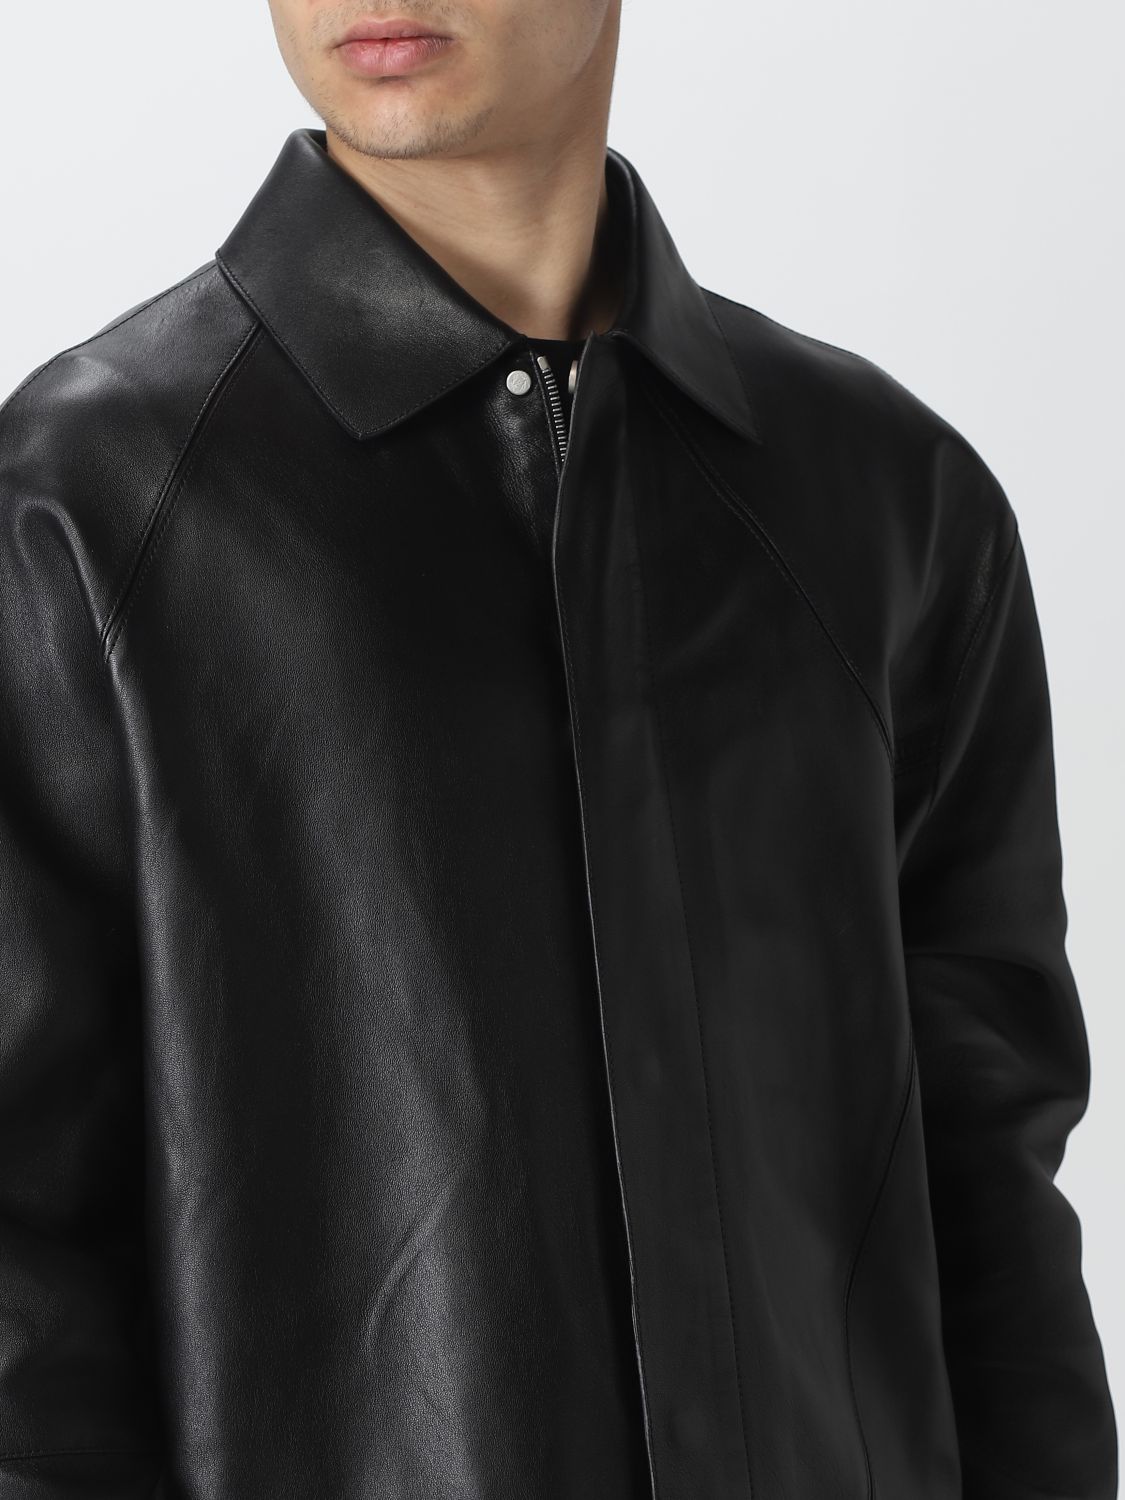 Shirt Loewe: Loewe shirt for man black 5